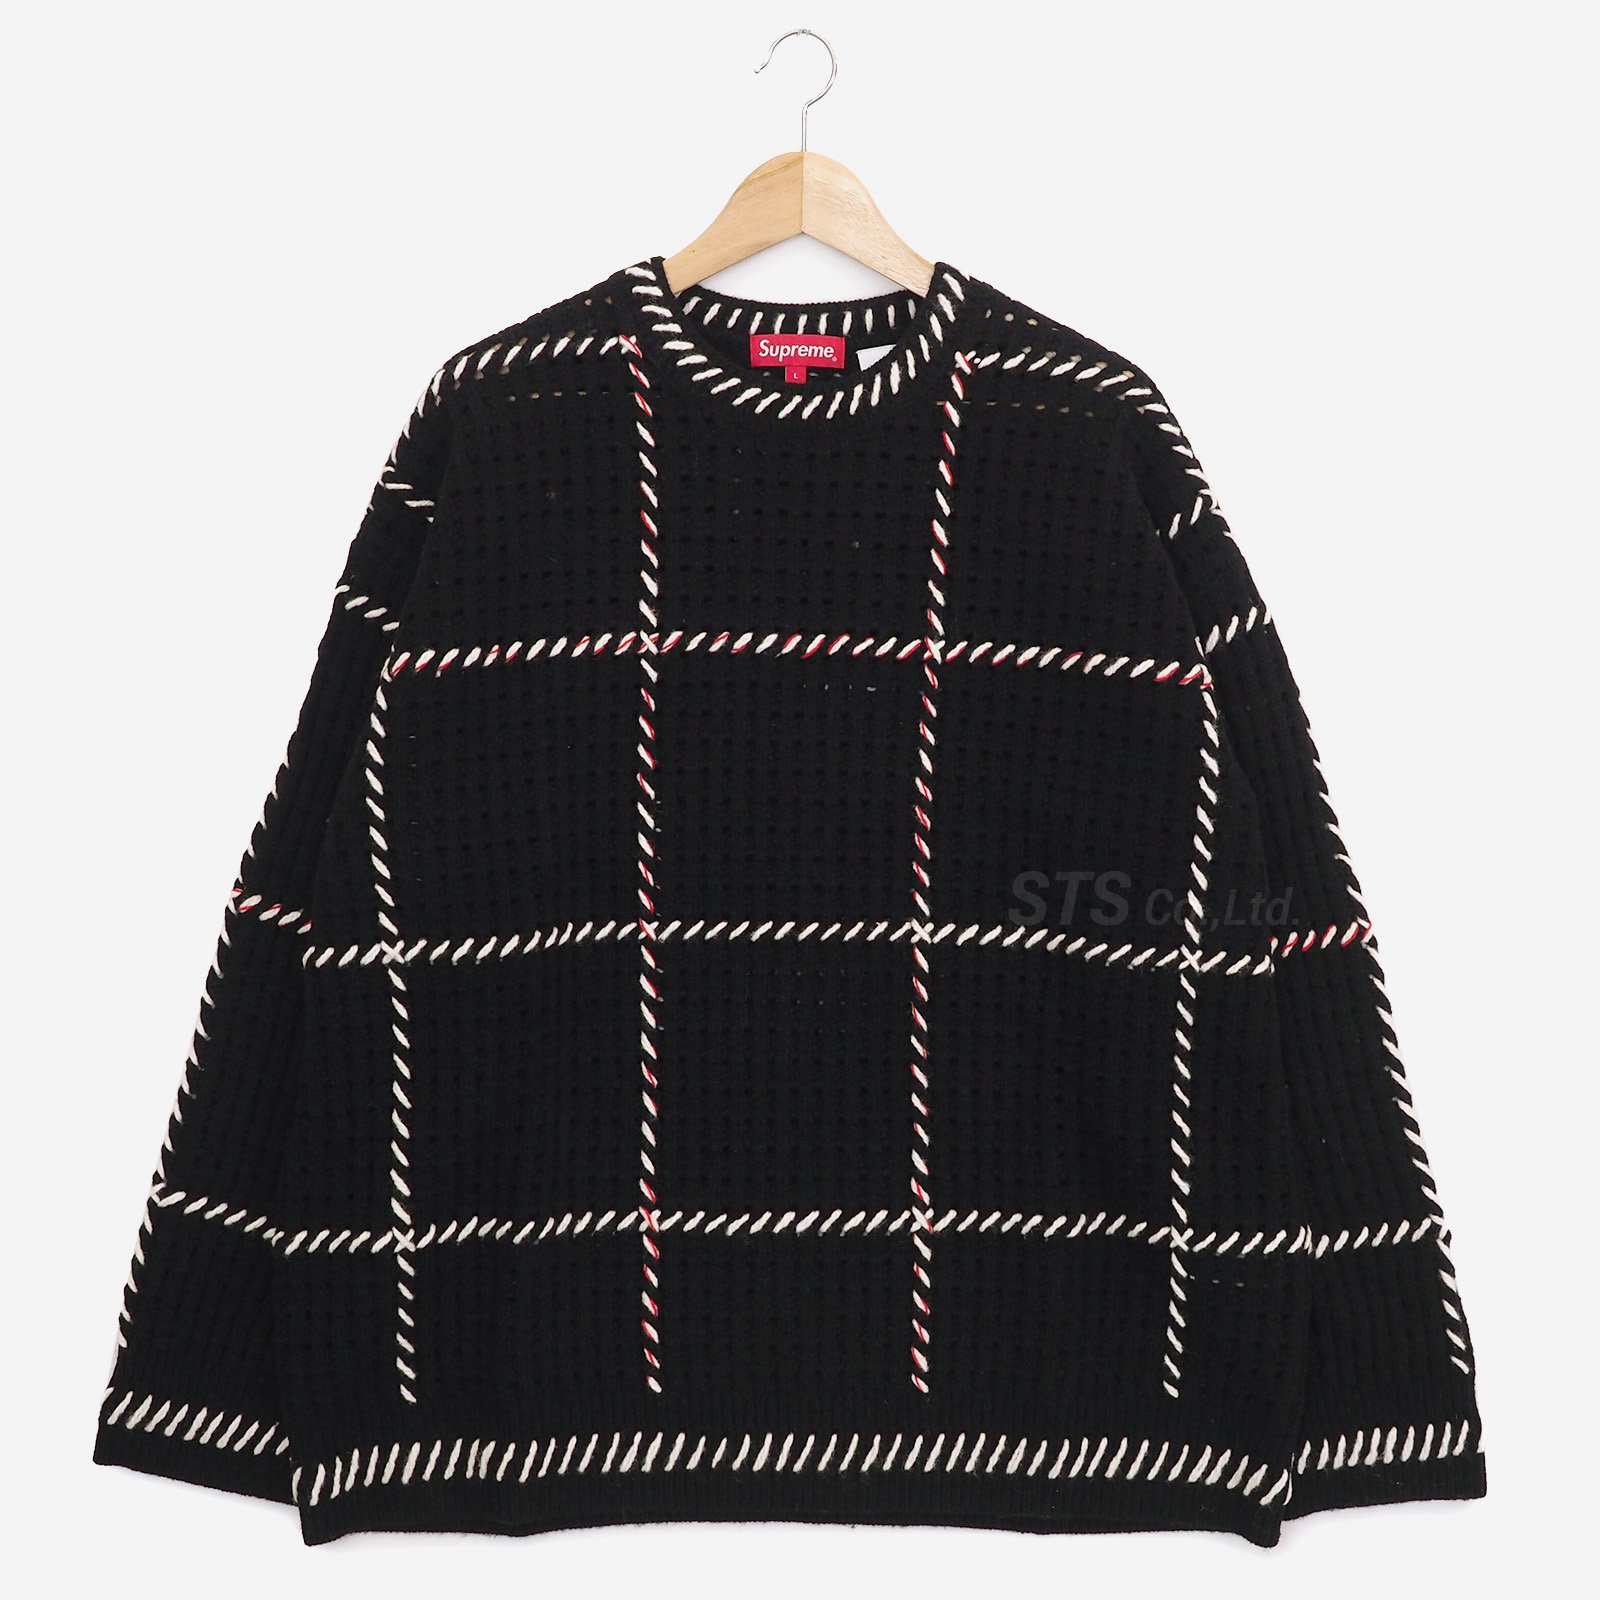 Supreme Quilt Stitch Sweater XXL